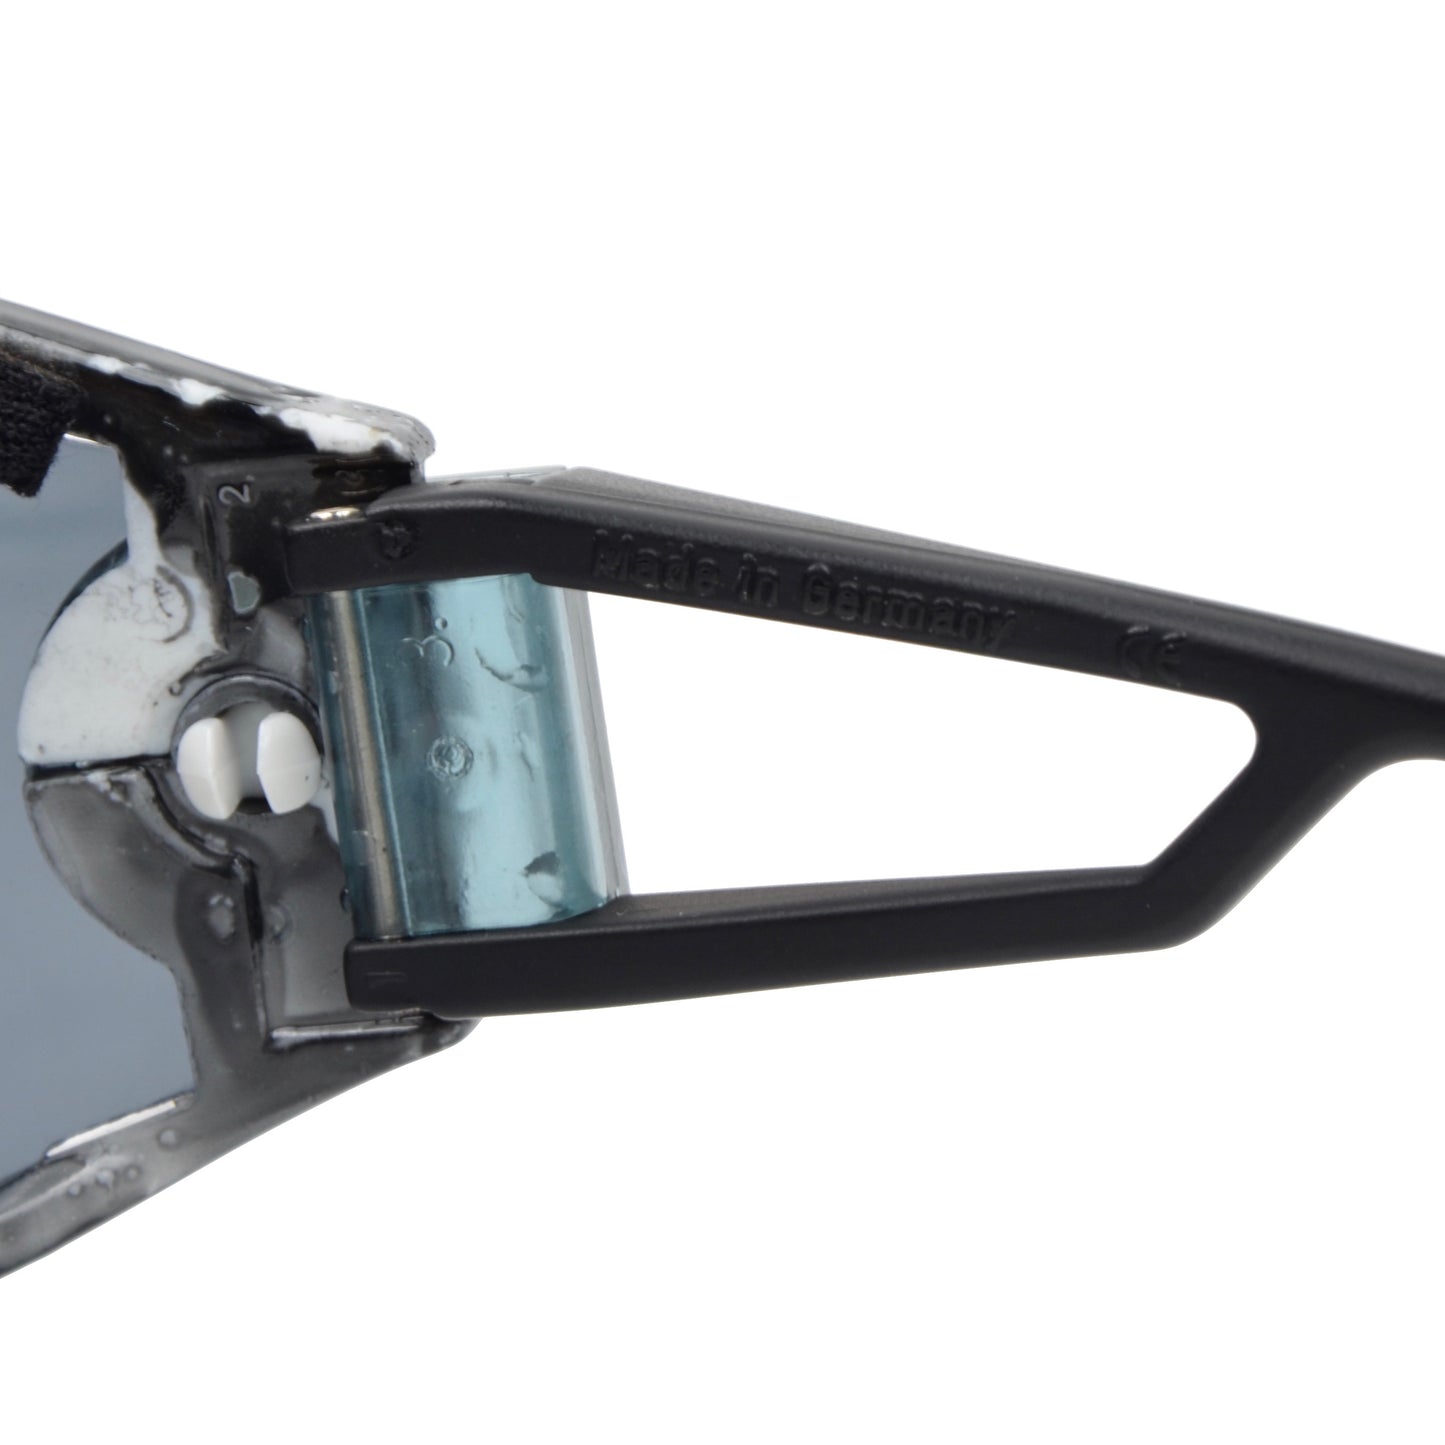 Alpina Swing Shield S Sonnenbrille - Schwarz & Weiß